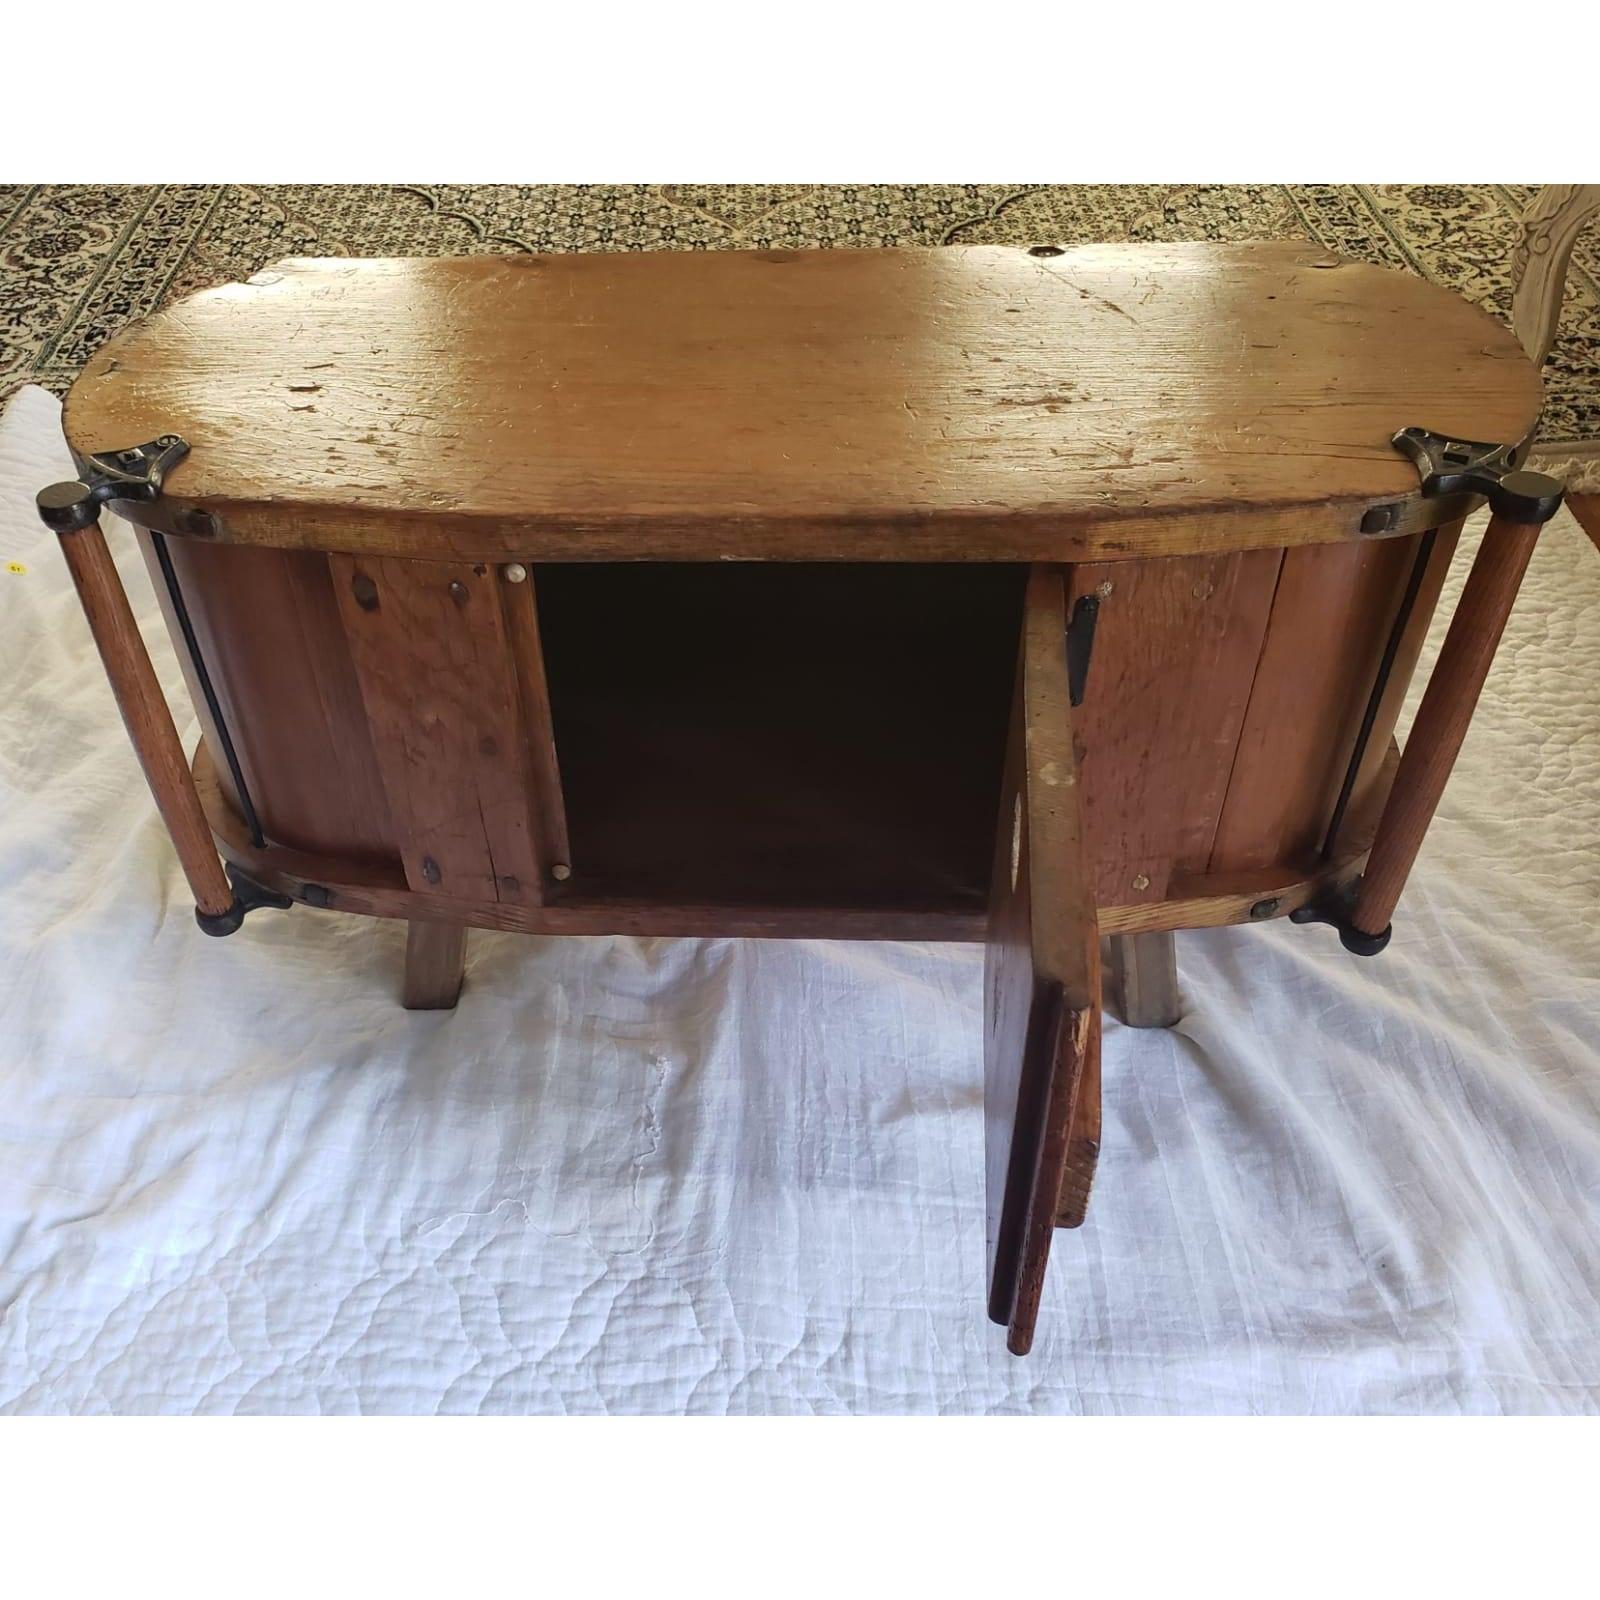 Antique armoire de table pour baratte à beurre avec porte centrale qui s'ouvre pour le stockage.
Une porte à l'avant. Poignée de chaque côté de l'avant. Quelques rayures et coutures d'âge.
Mesure 36 